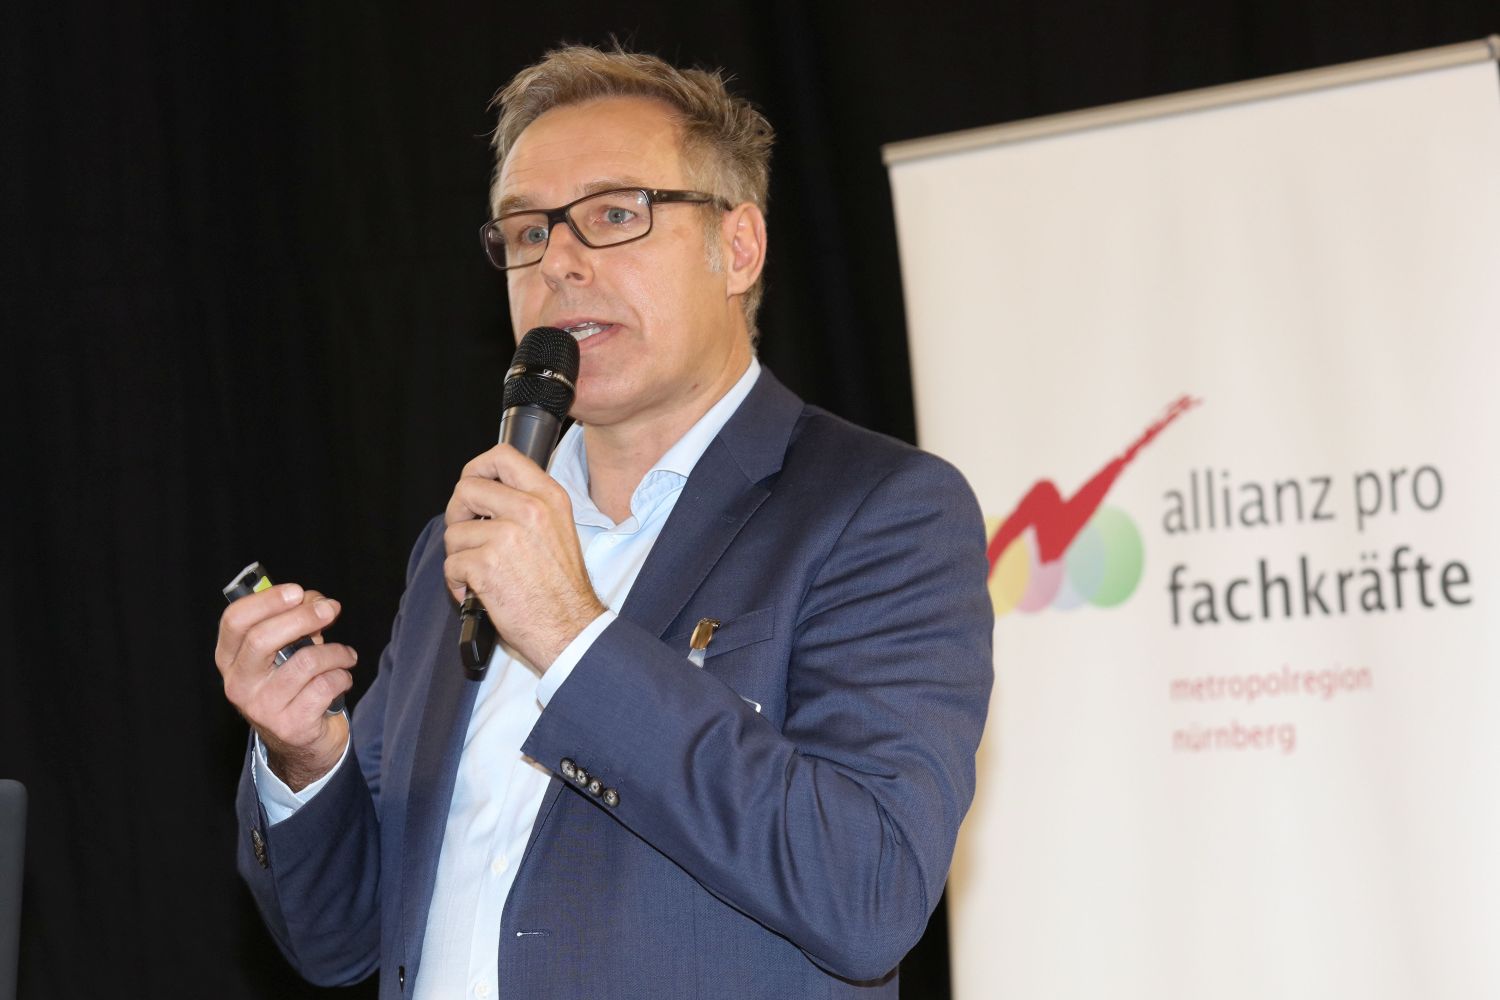 Stefan Wacker bei der Jahreskonferenz Allianz pro Fachkräfte 2016